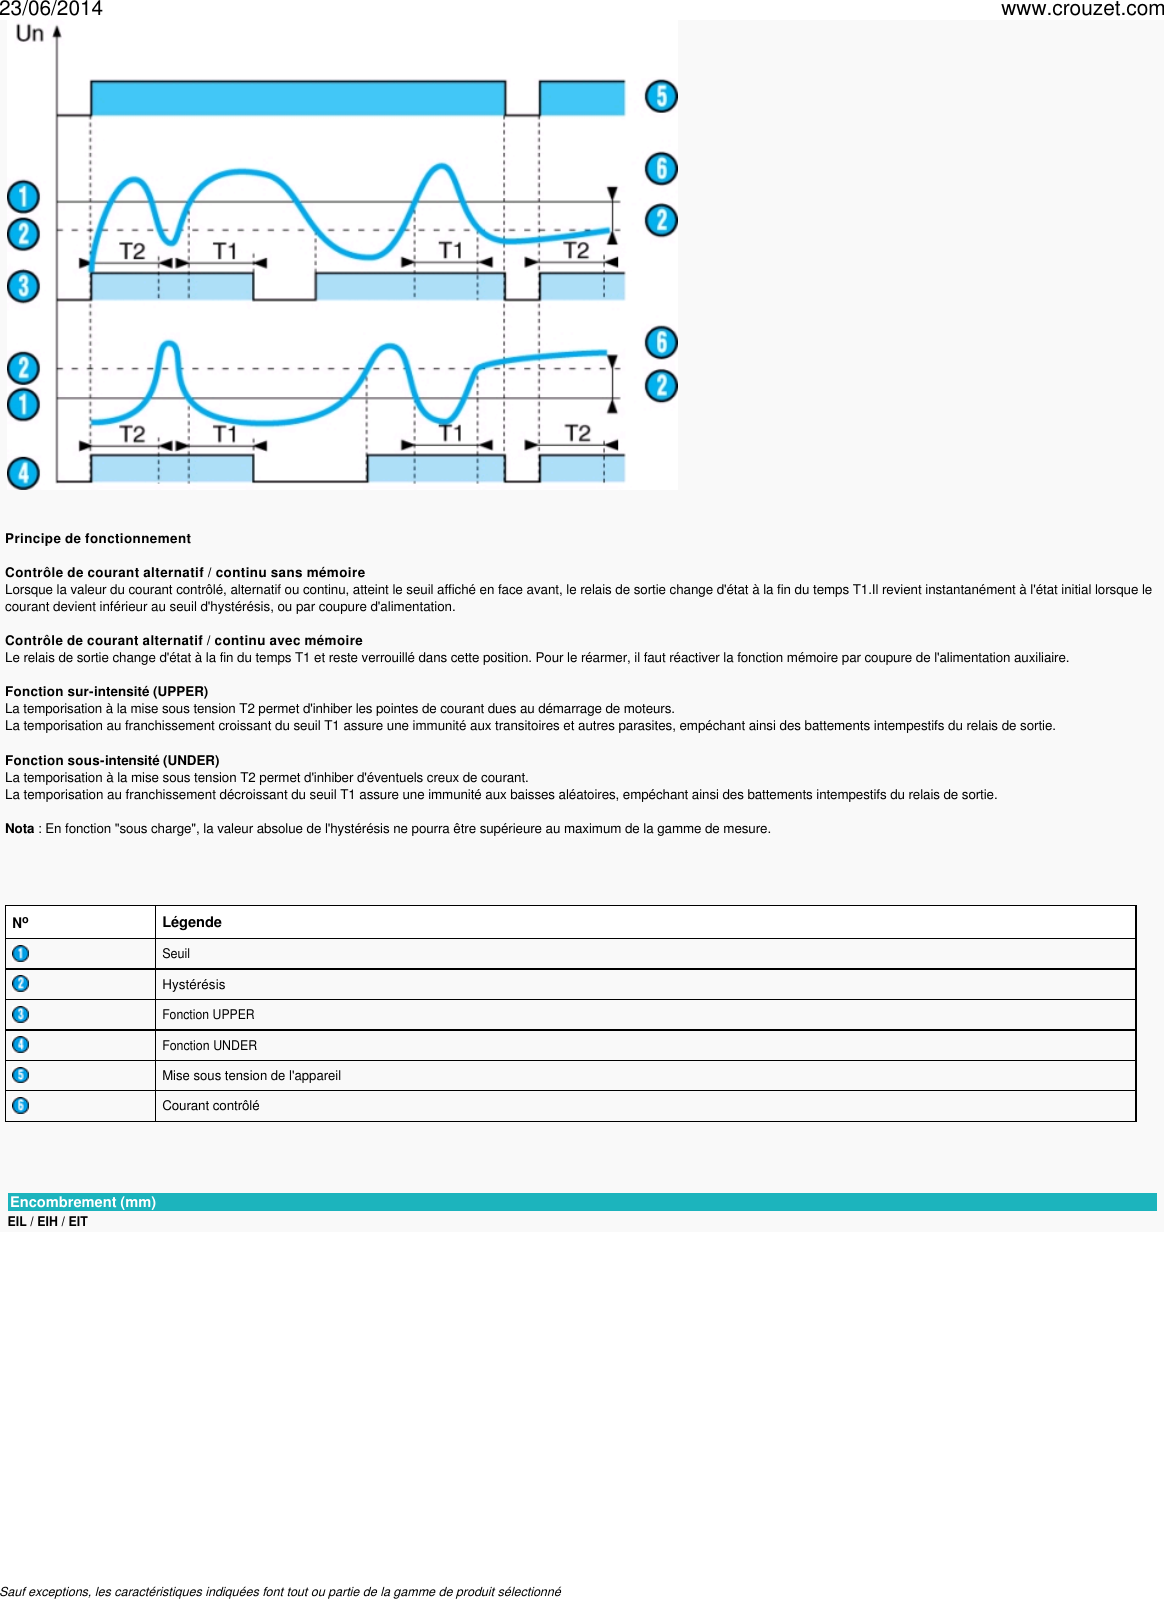 Page 3 of 4 - Relais-de-controle-e-f-l-controle-de-courant-ei-eih-Ref-84871032